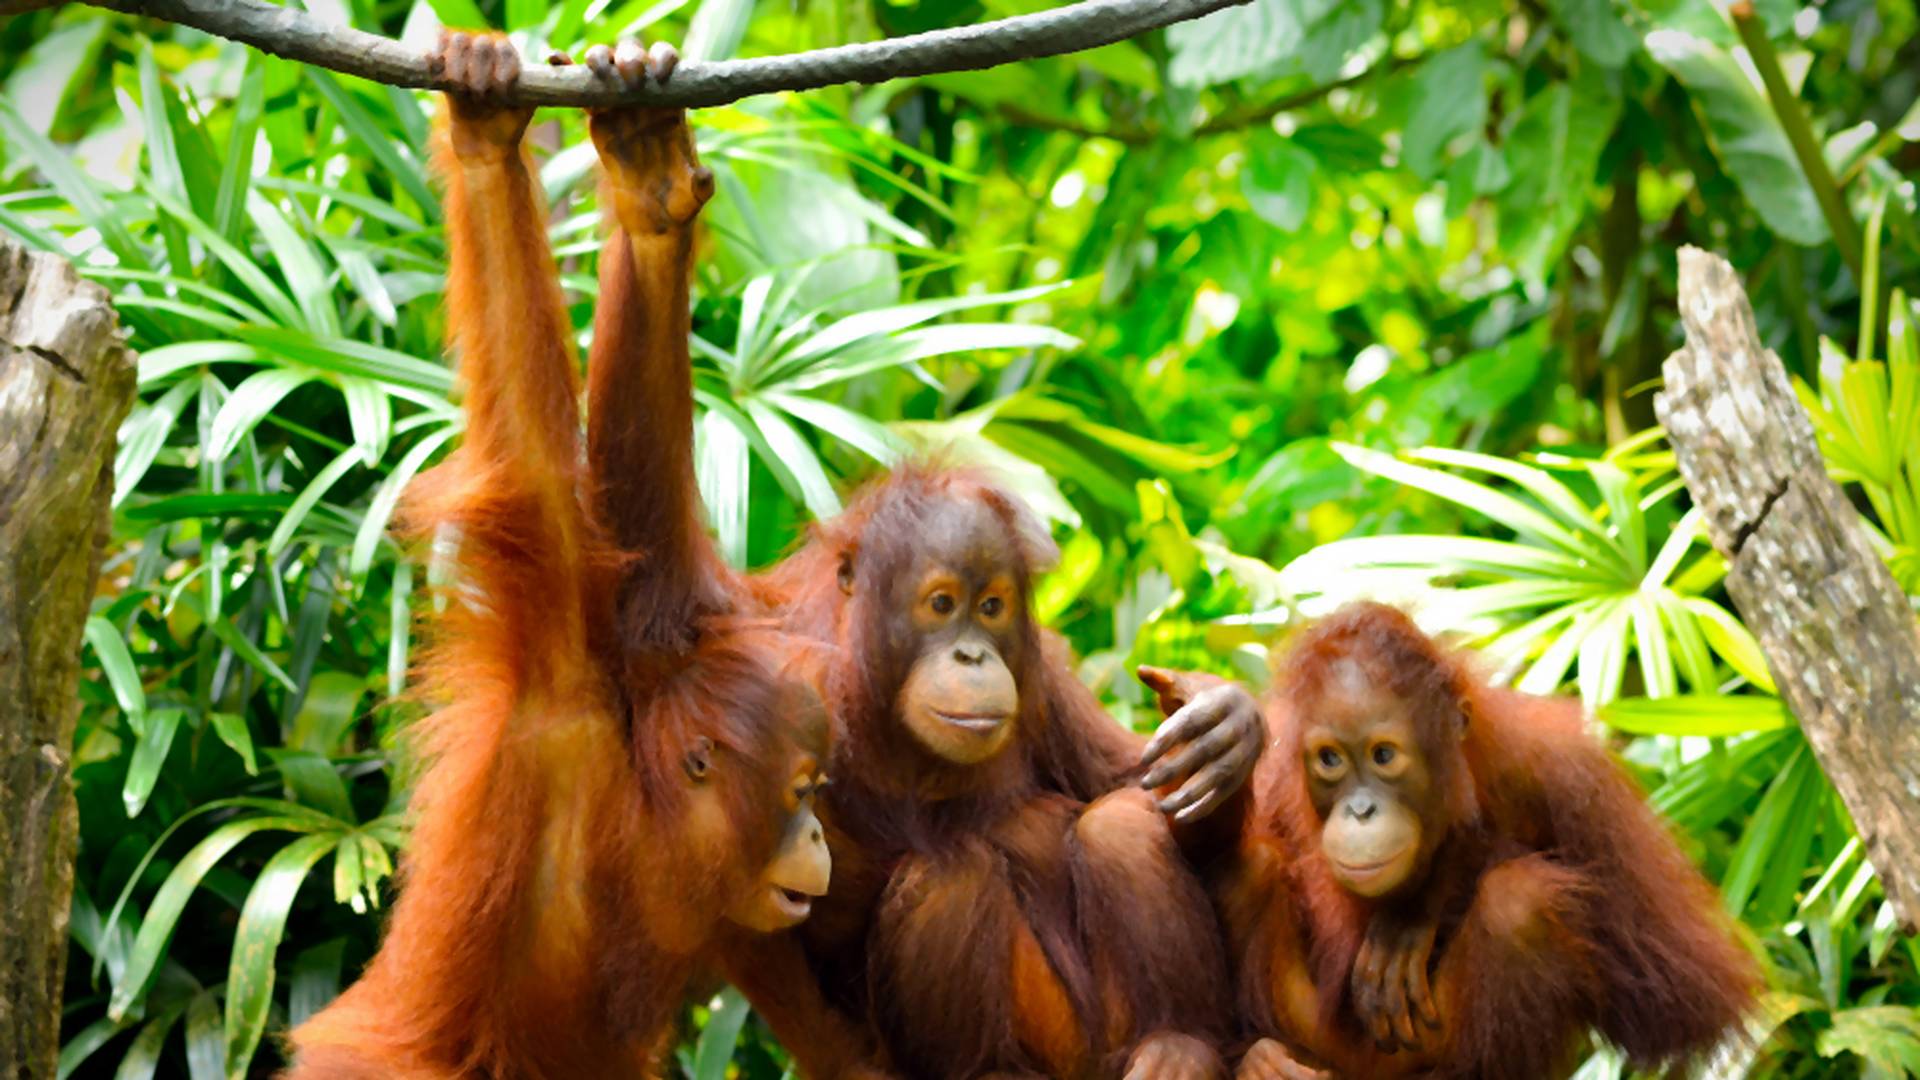 Greenpeace alarmuje, że produkcja Oreo przyczynia się do śmierci orangutanów. Firma odpowiada